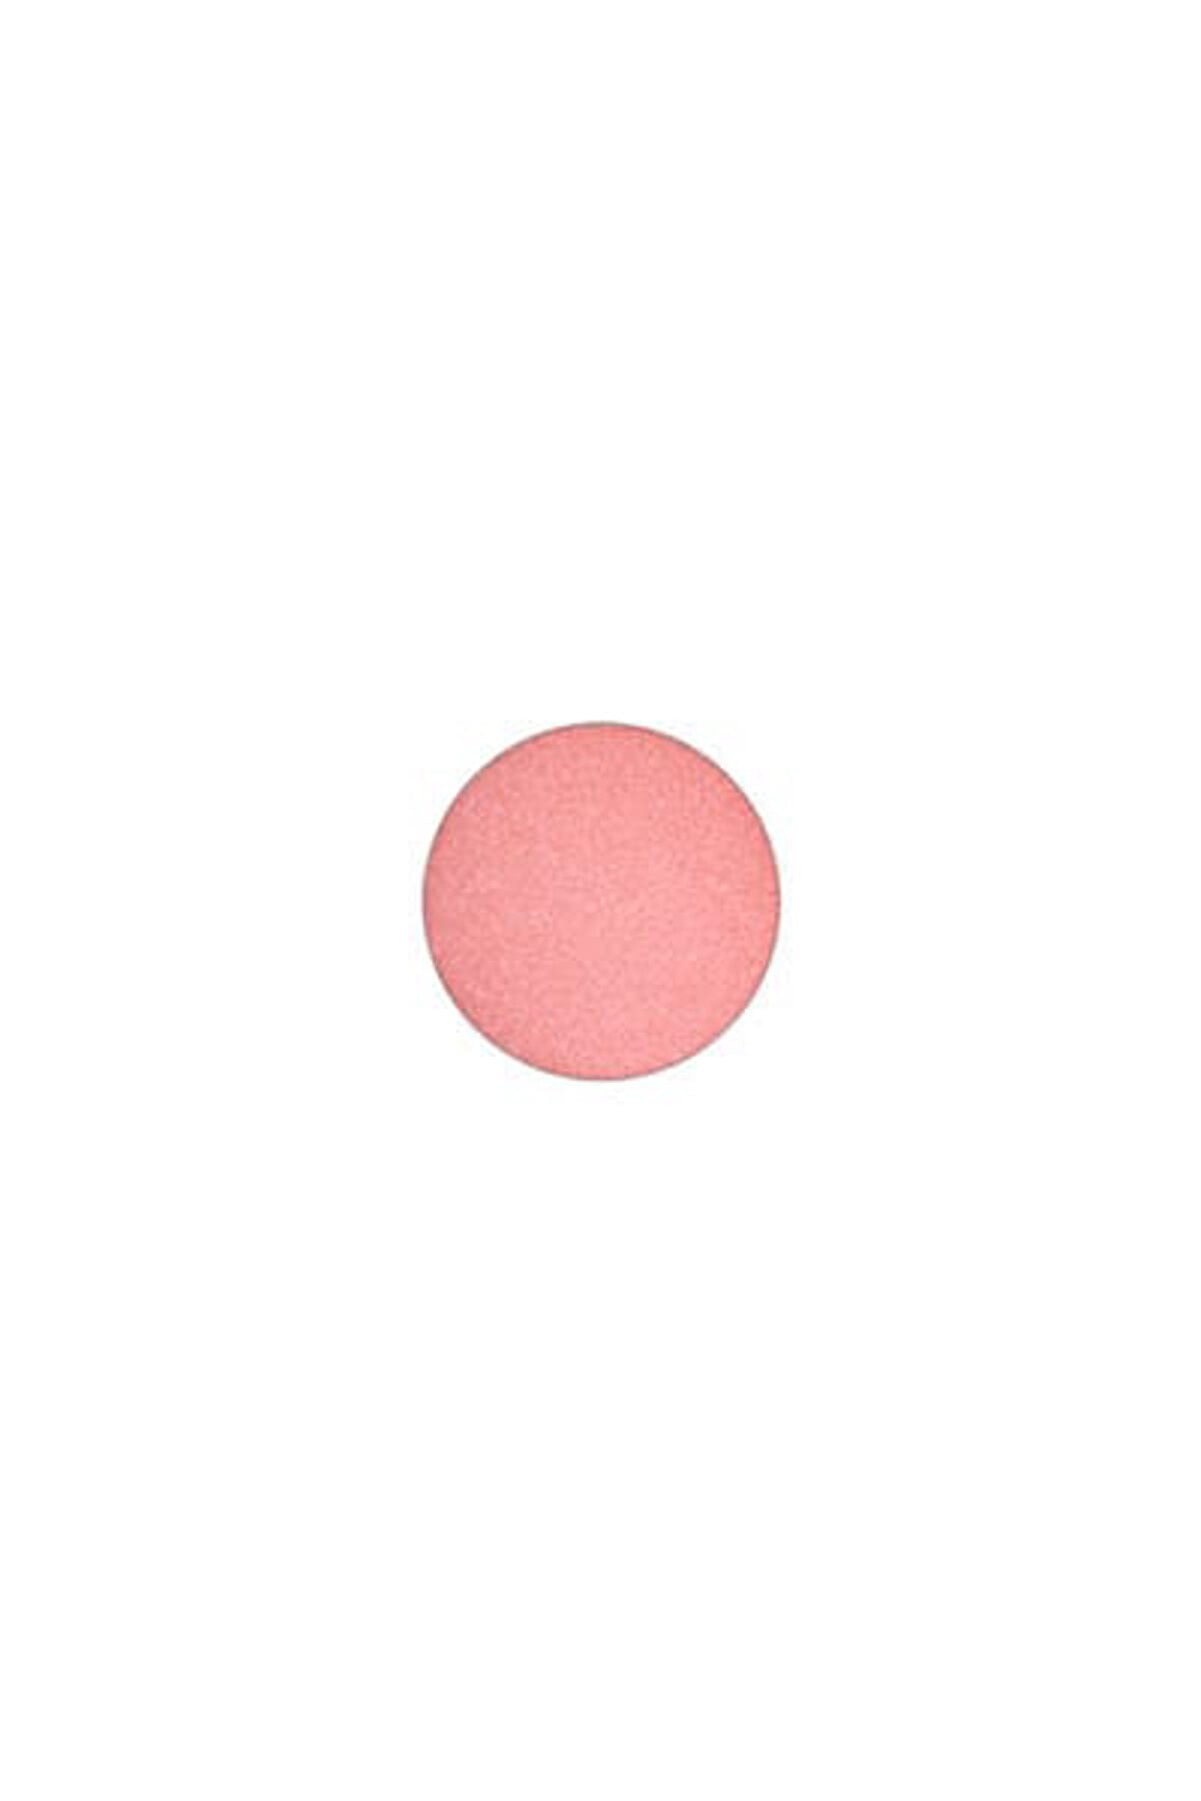 Mac Refill Allık - Powder Blush Pro Palette Refill Pan Peachykeen 6 g 773602071128